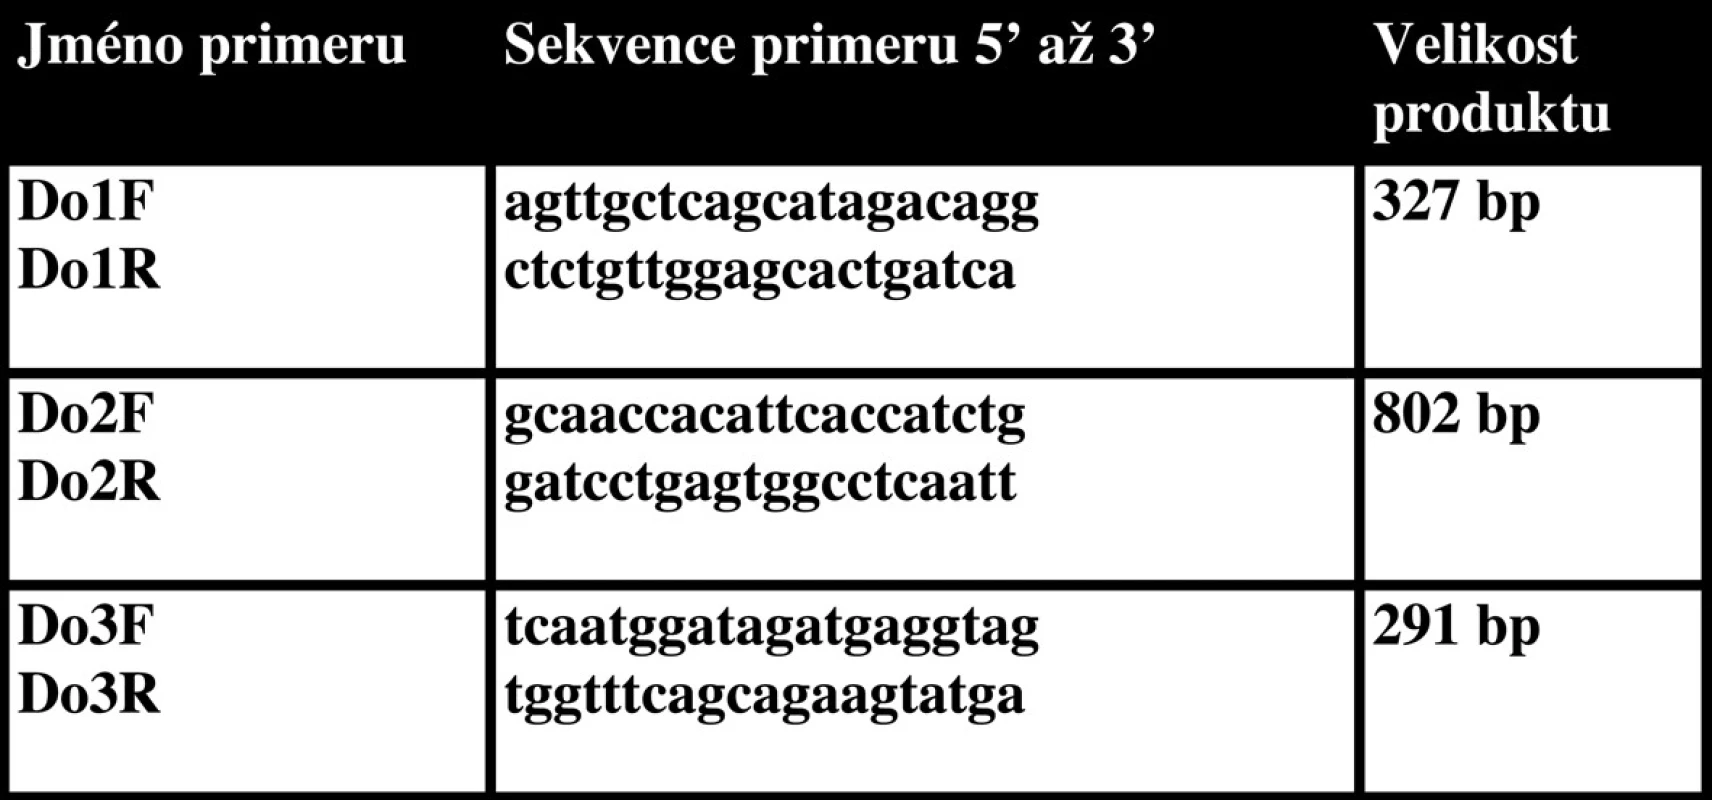 Primery použité pro analýzu genomové DNA.